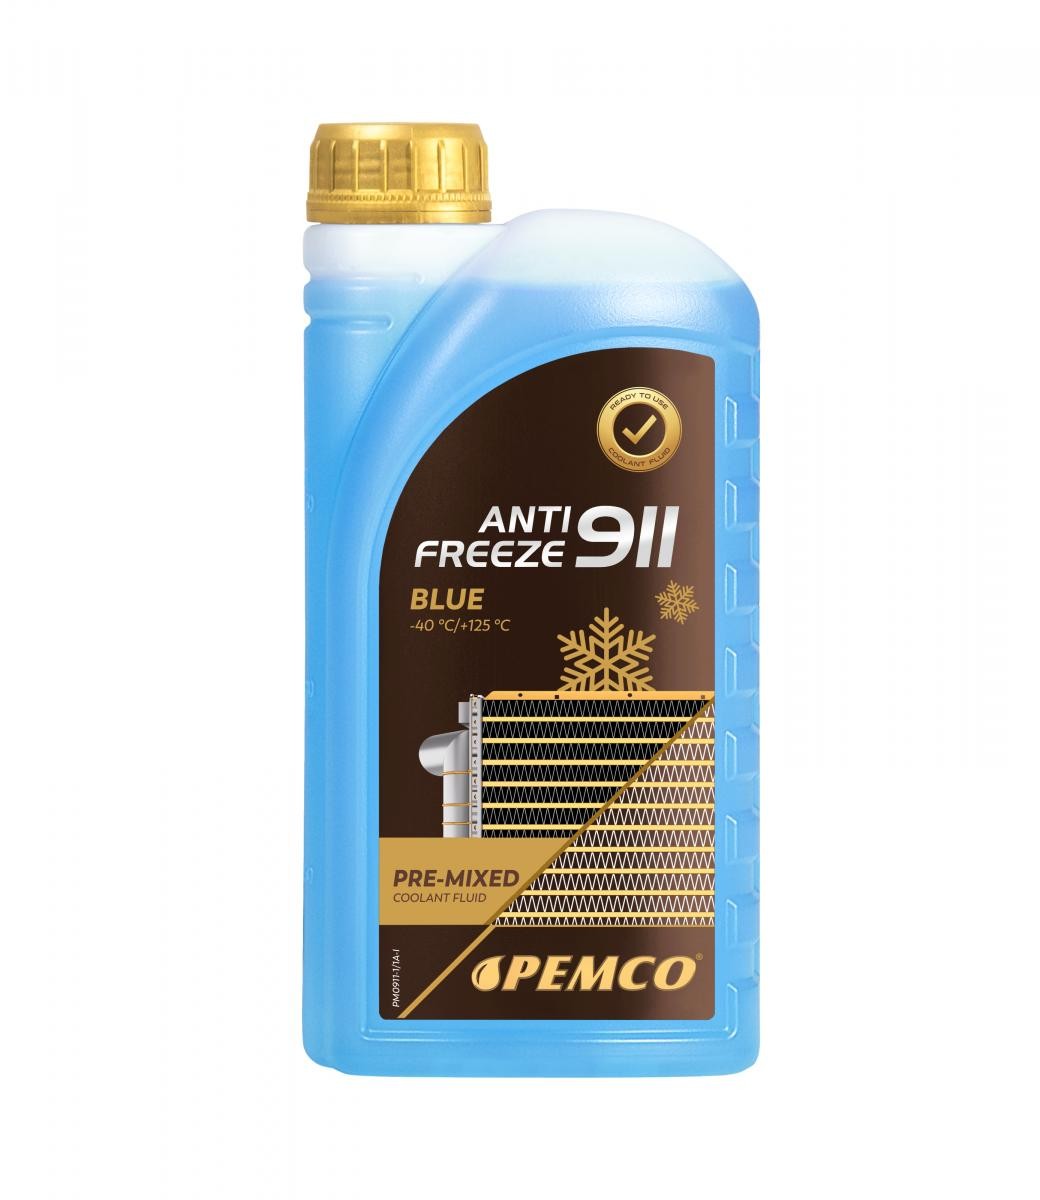 PM0911-1 PEMCO Antifreeze 911 -40 Kühlmittel G11 Blau, 1l PM0911-1 ❱❱❱  Preis und Erfahrungen